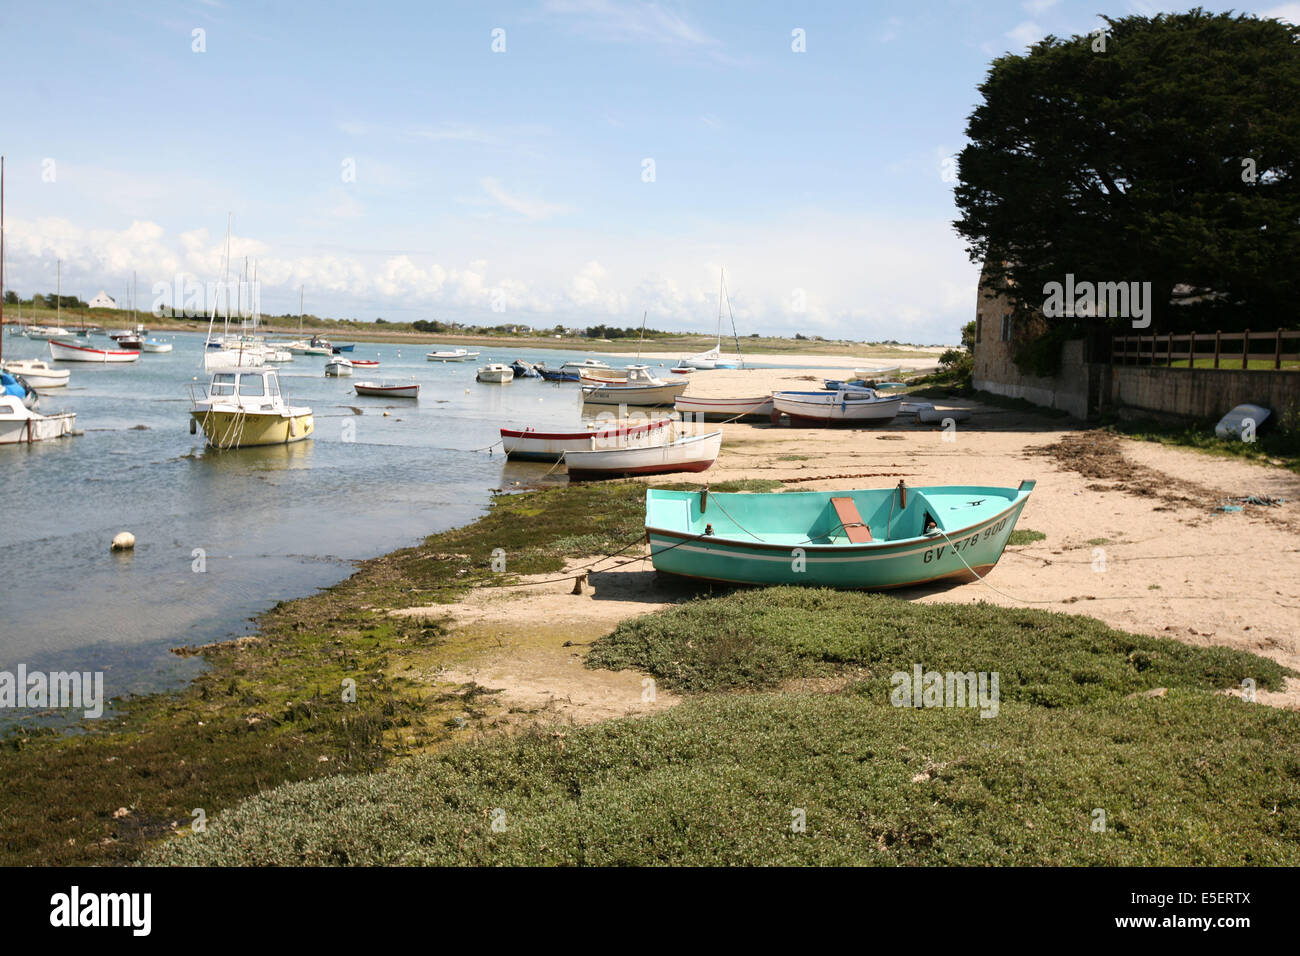 France, Bretagne, finistere sud, pays bigouden, lesconil, plage, petits bateaux, Stock Photo